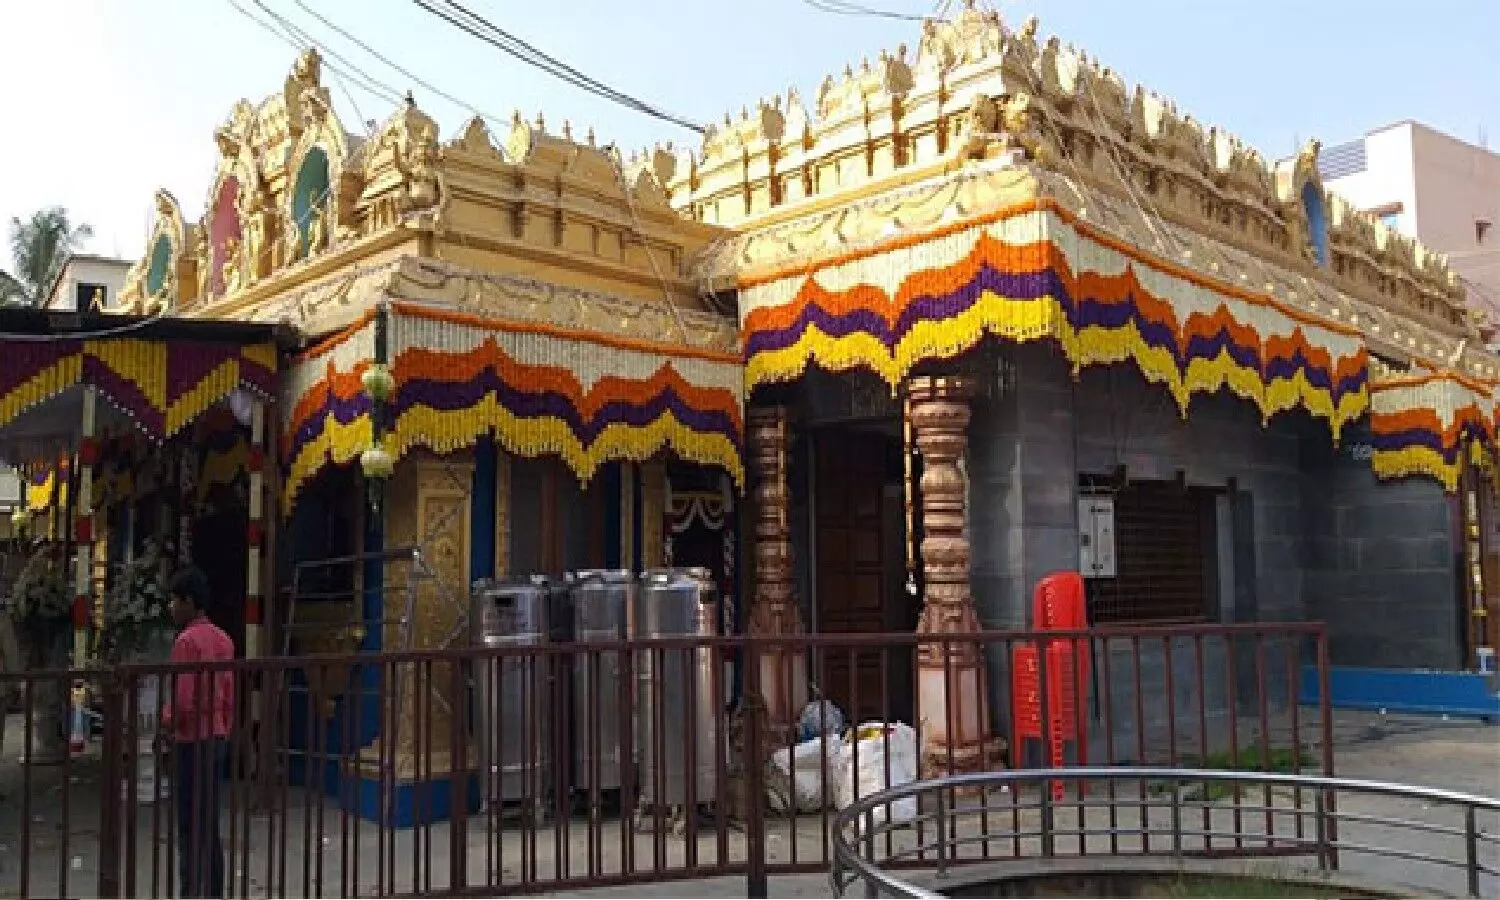 Hasanamba Temple